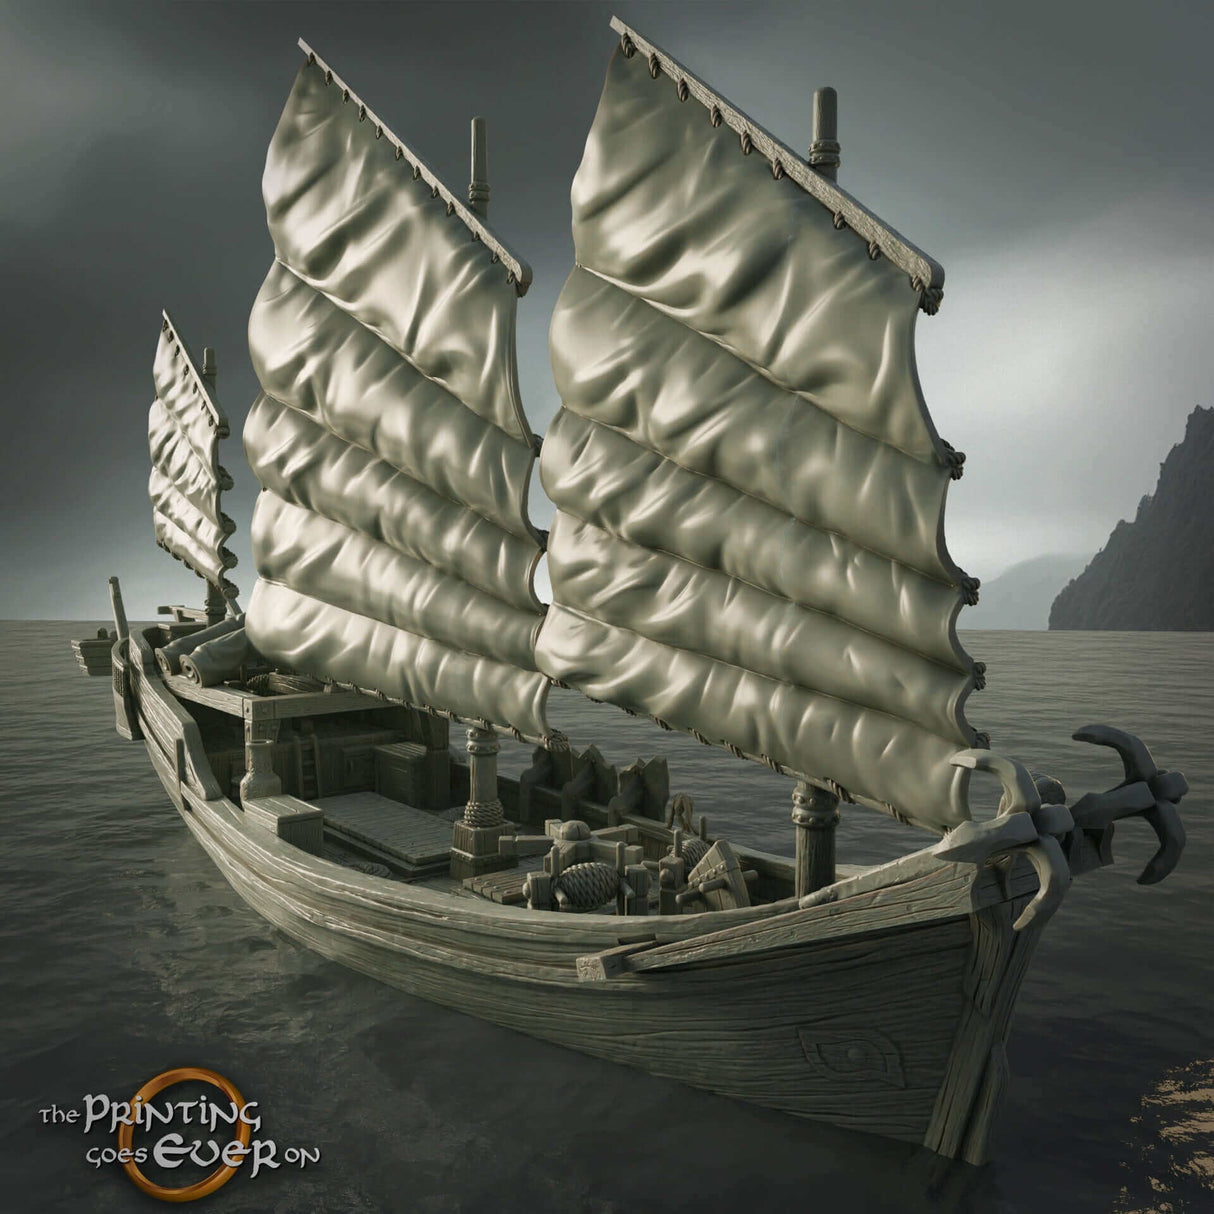 Riesen-Junk-Schiff von The Printing Goes Ever On, ideal für verschiedene Piraten Tabletop-Spiele